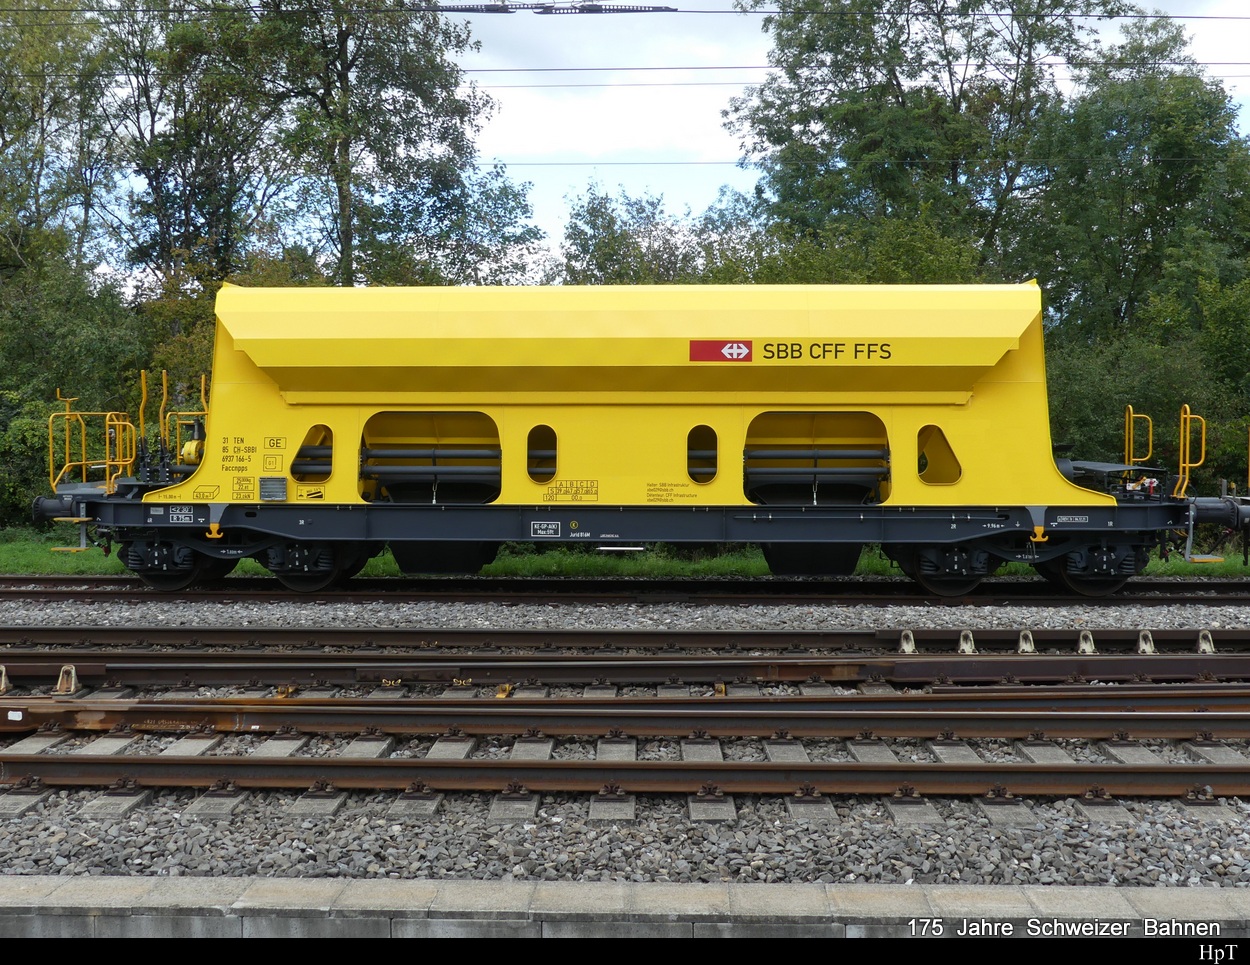 SBB - Güterwagen vom Typ  Faccnpps  31 85 693 7 166-5 abgestellt in Lyss am 17.09.2022